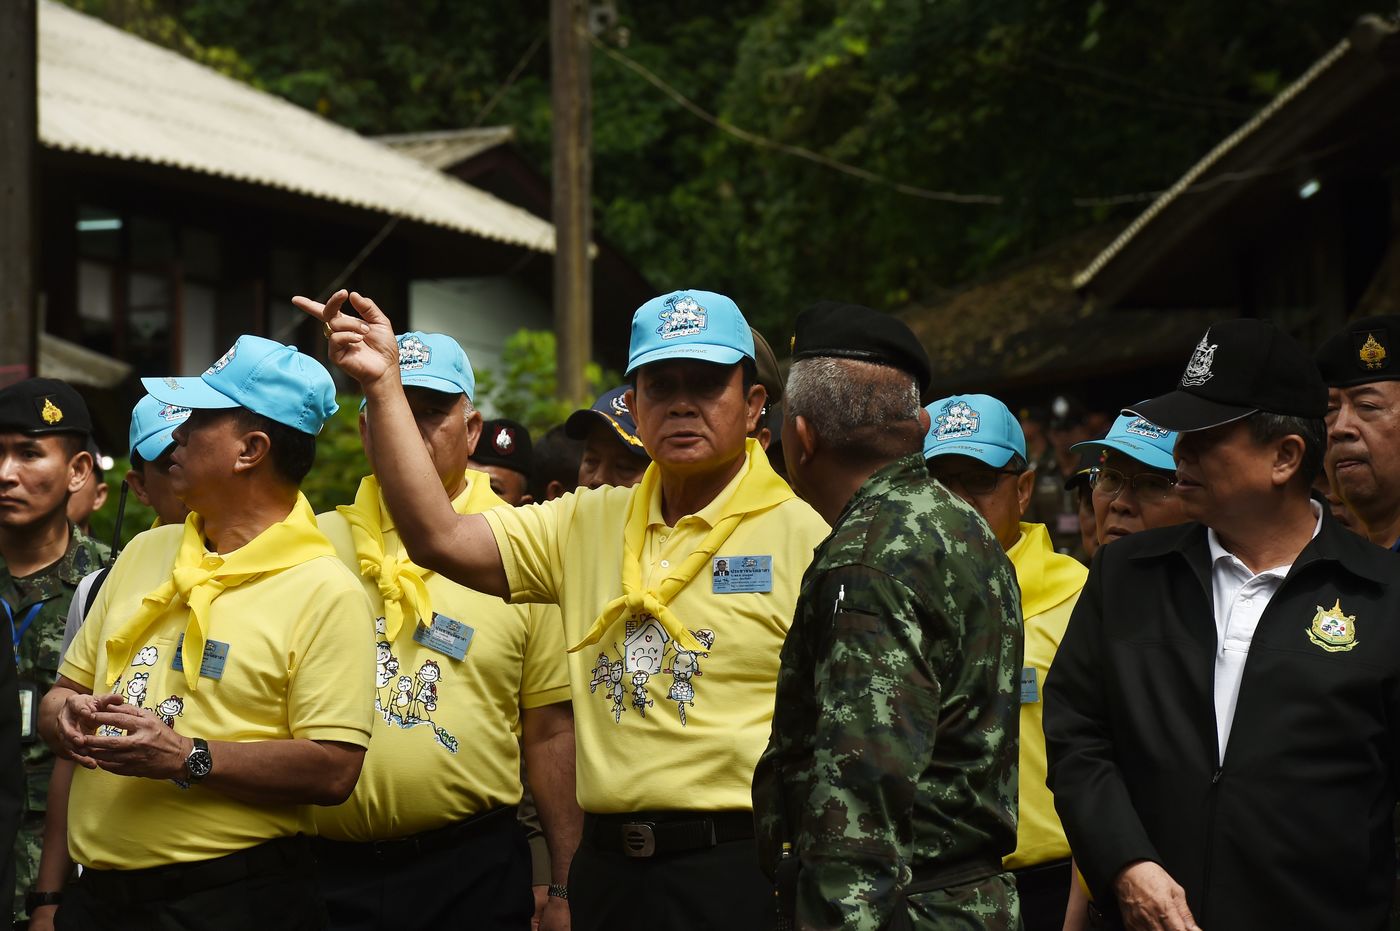 Thailandia: speranze per giovani dispersi in grotta